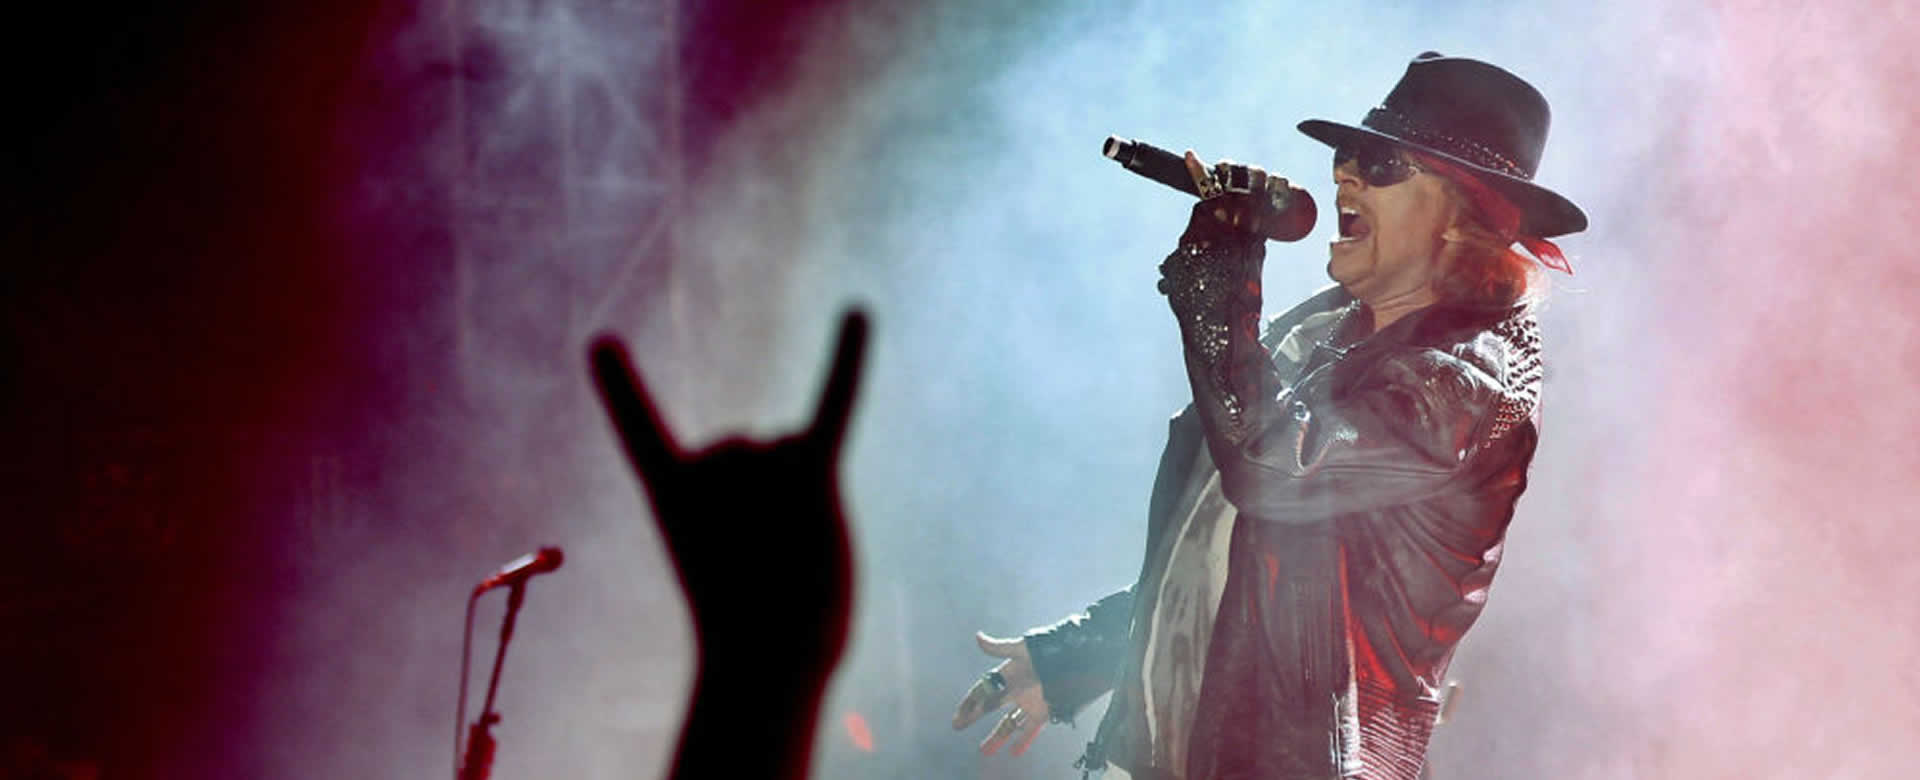 Guns N' Roses anunció gira mundial iniciando en Latinoamérica